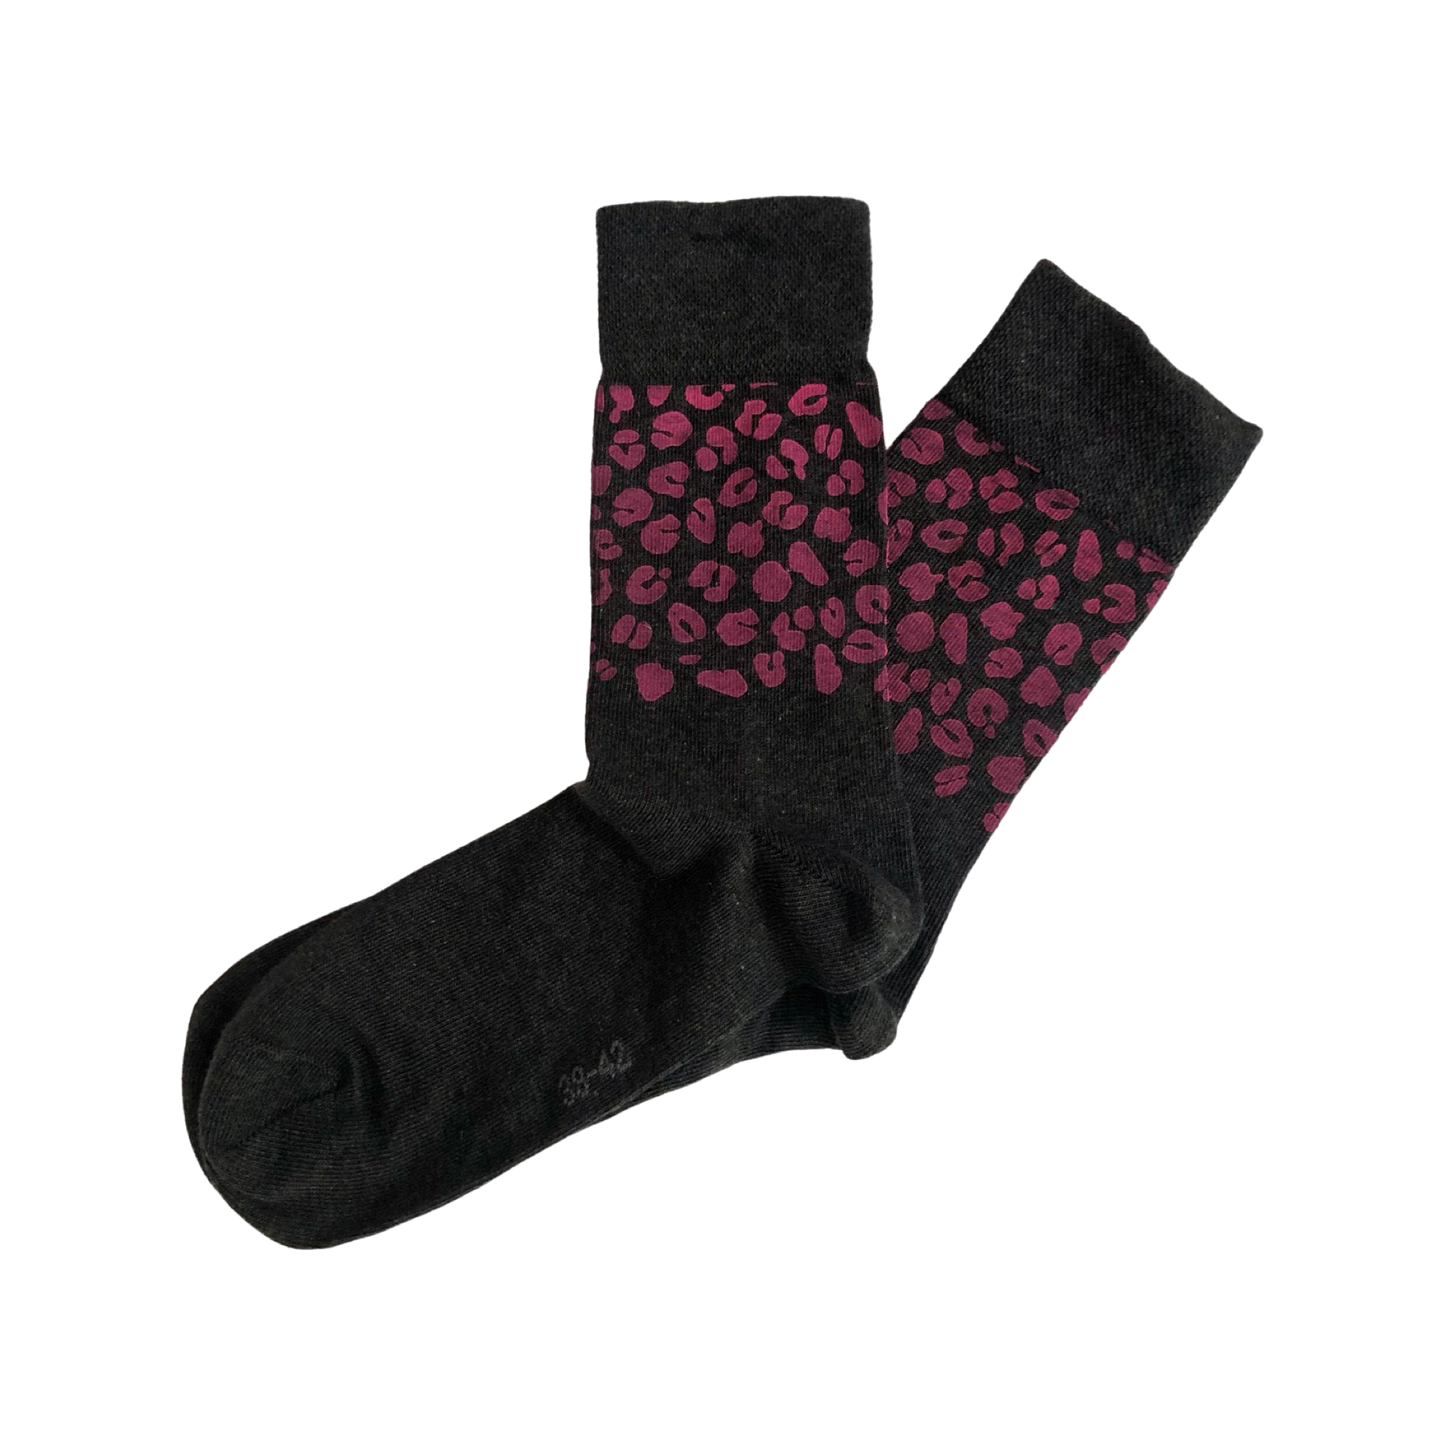 Socken mit handmade Siebdruck Leoprint